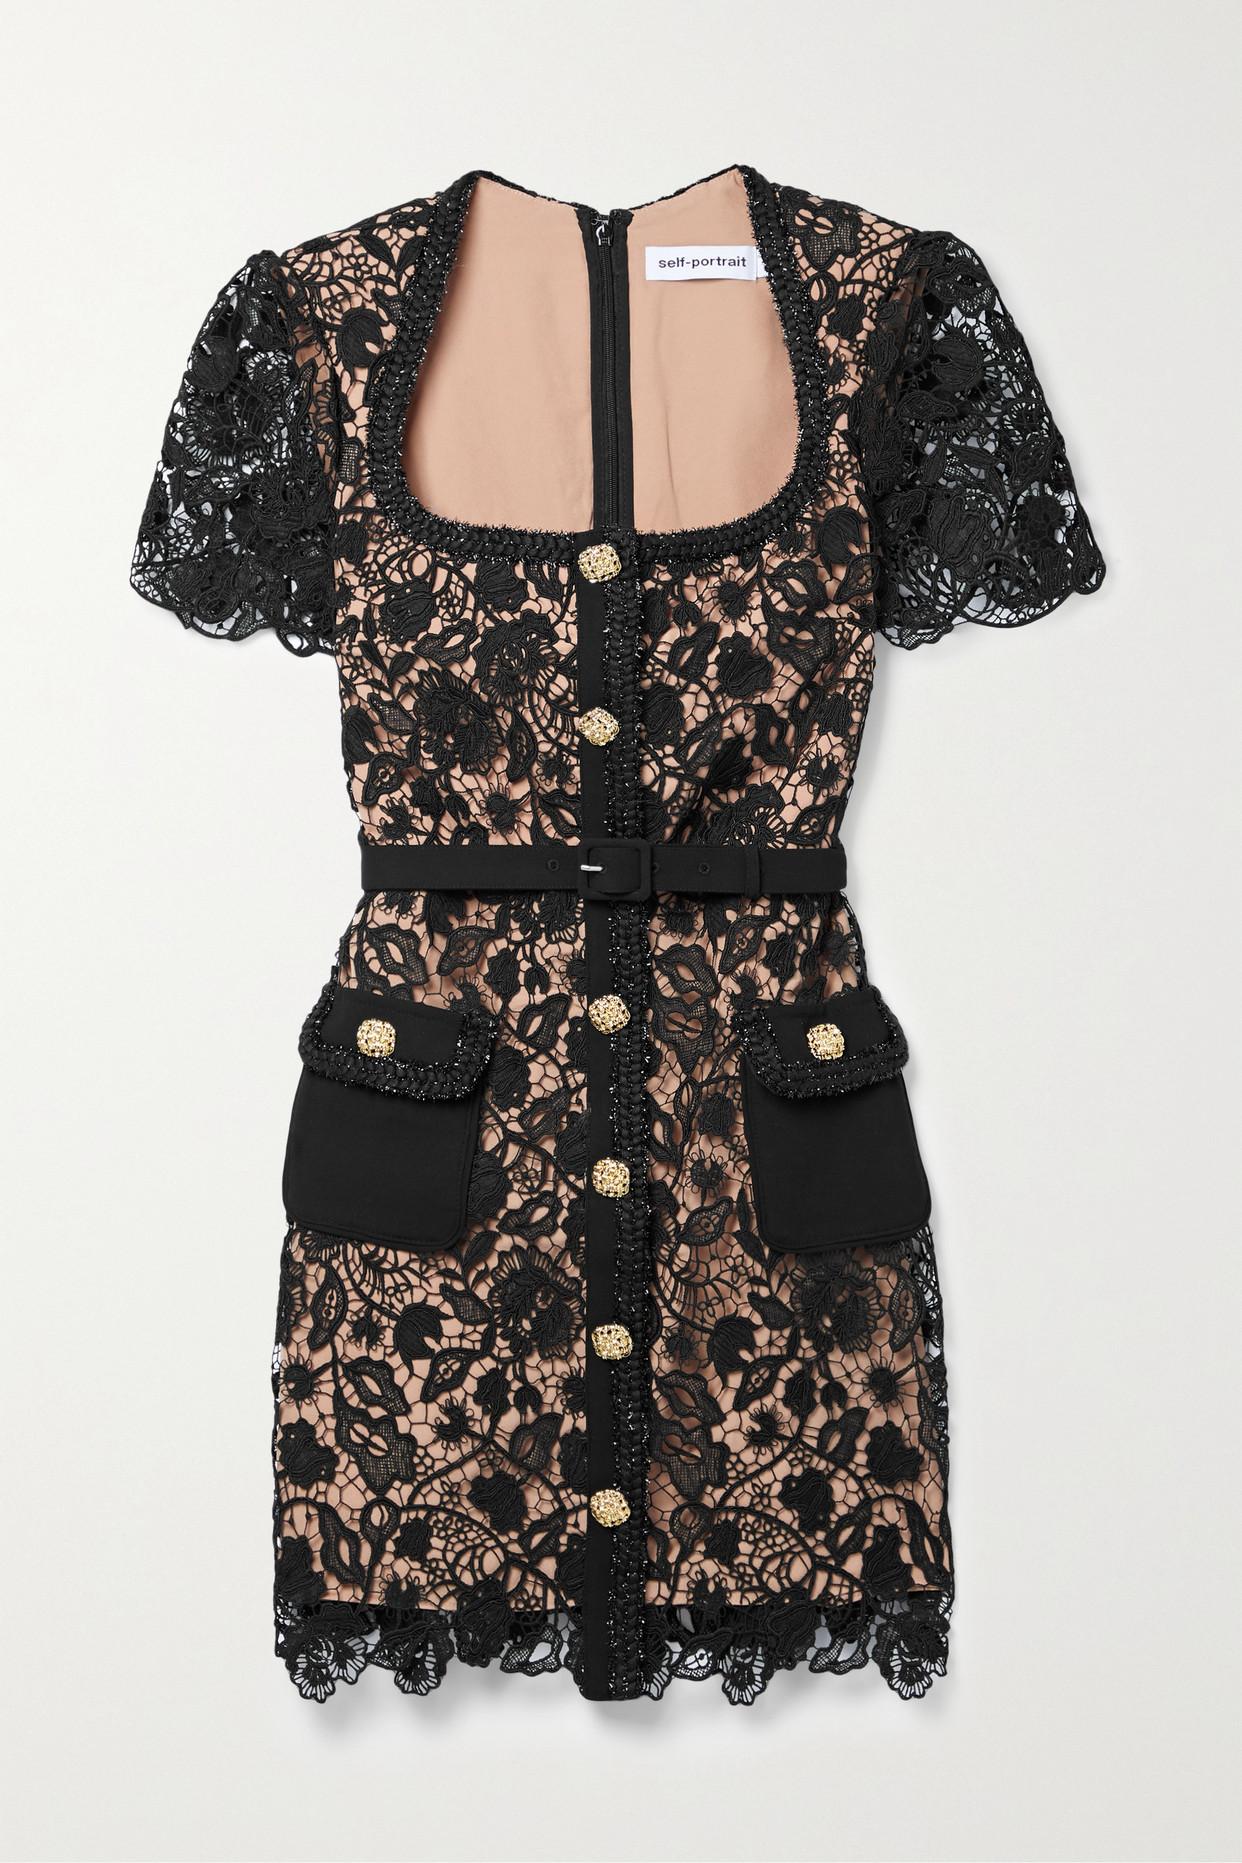 Self-Portrait Contrast Trim Geometric Guipure Lace Ruffle Dress in Black